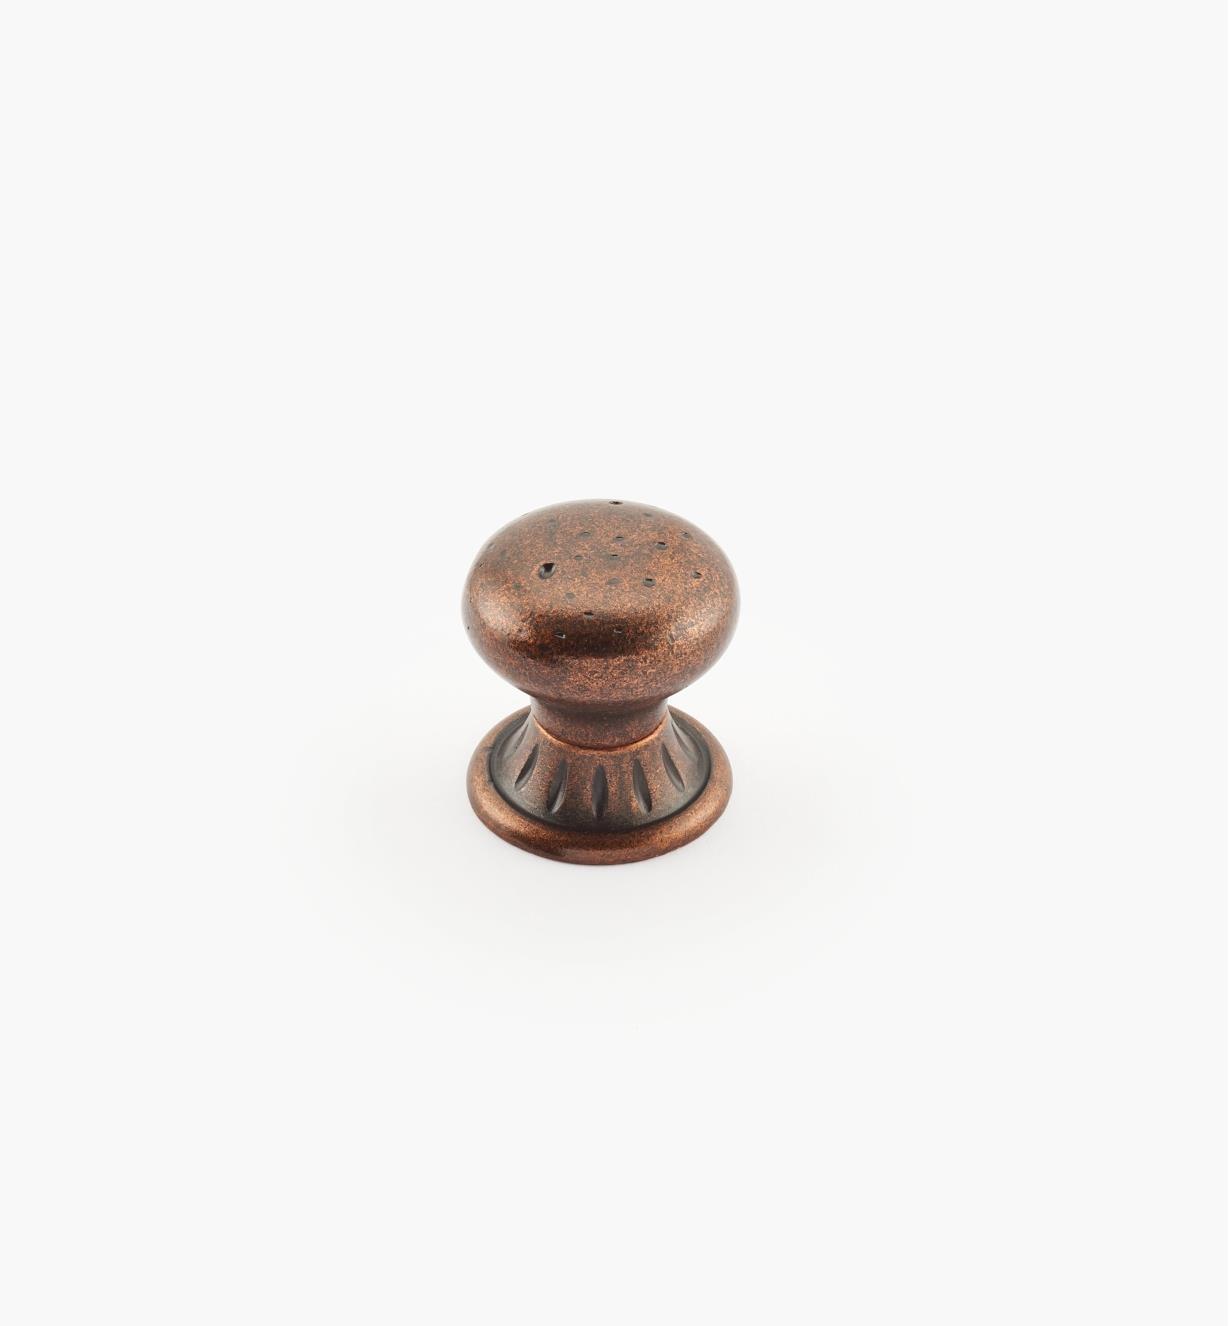 02A2614 - Ambrosia 1 1/4" x 1 1/4" Rich Bronze Round Knob